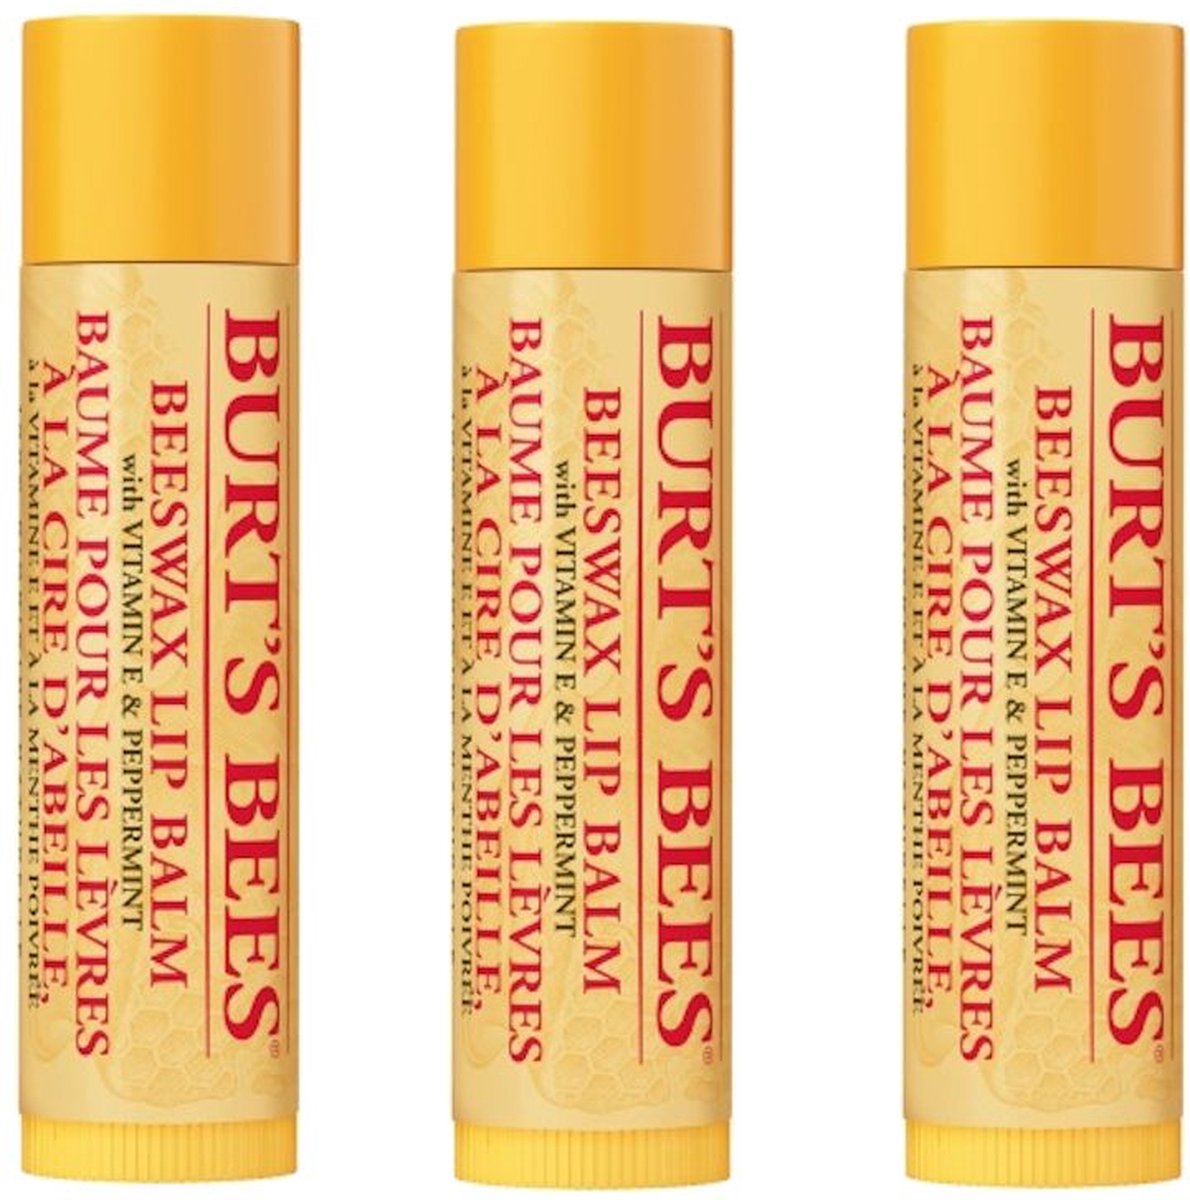 BURT'S BEES - Lip Balm Beeswax - 3 Pak